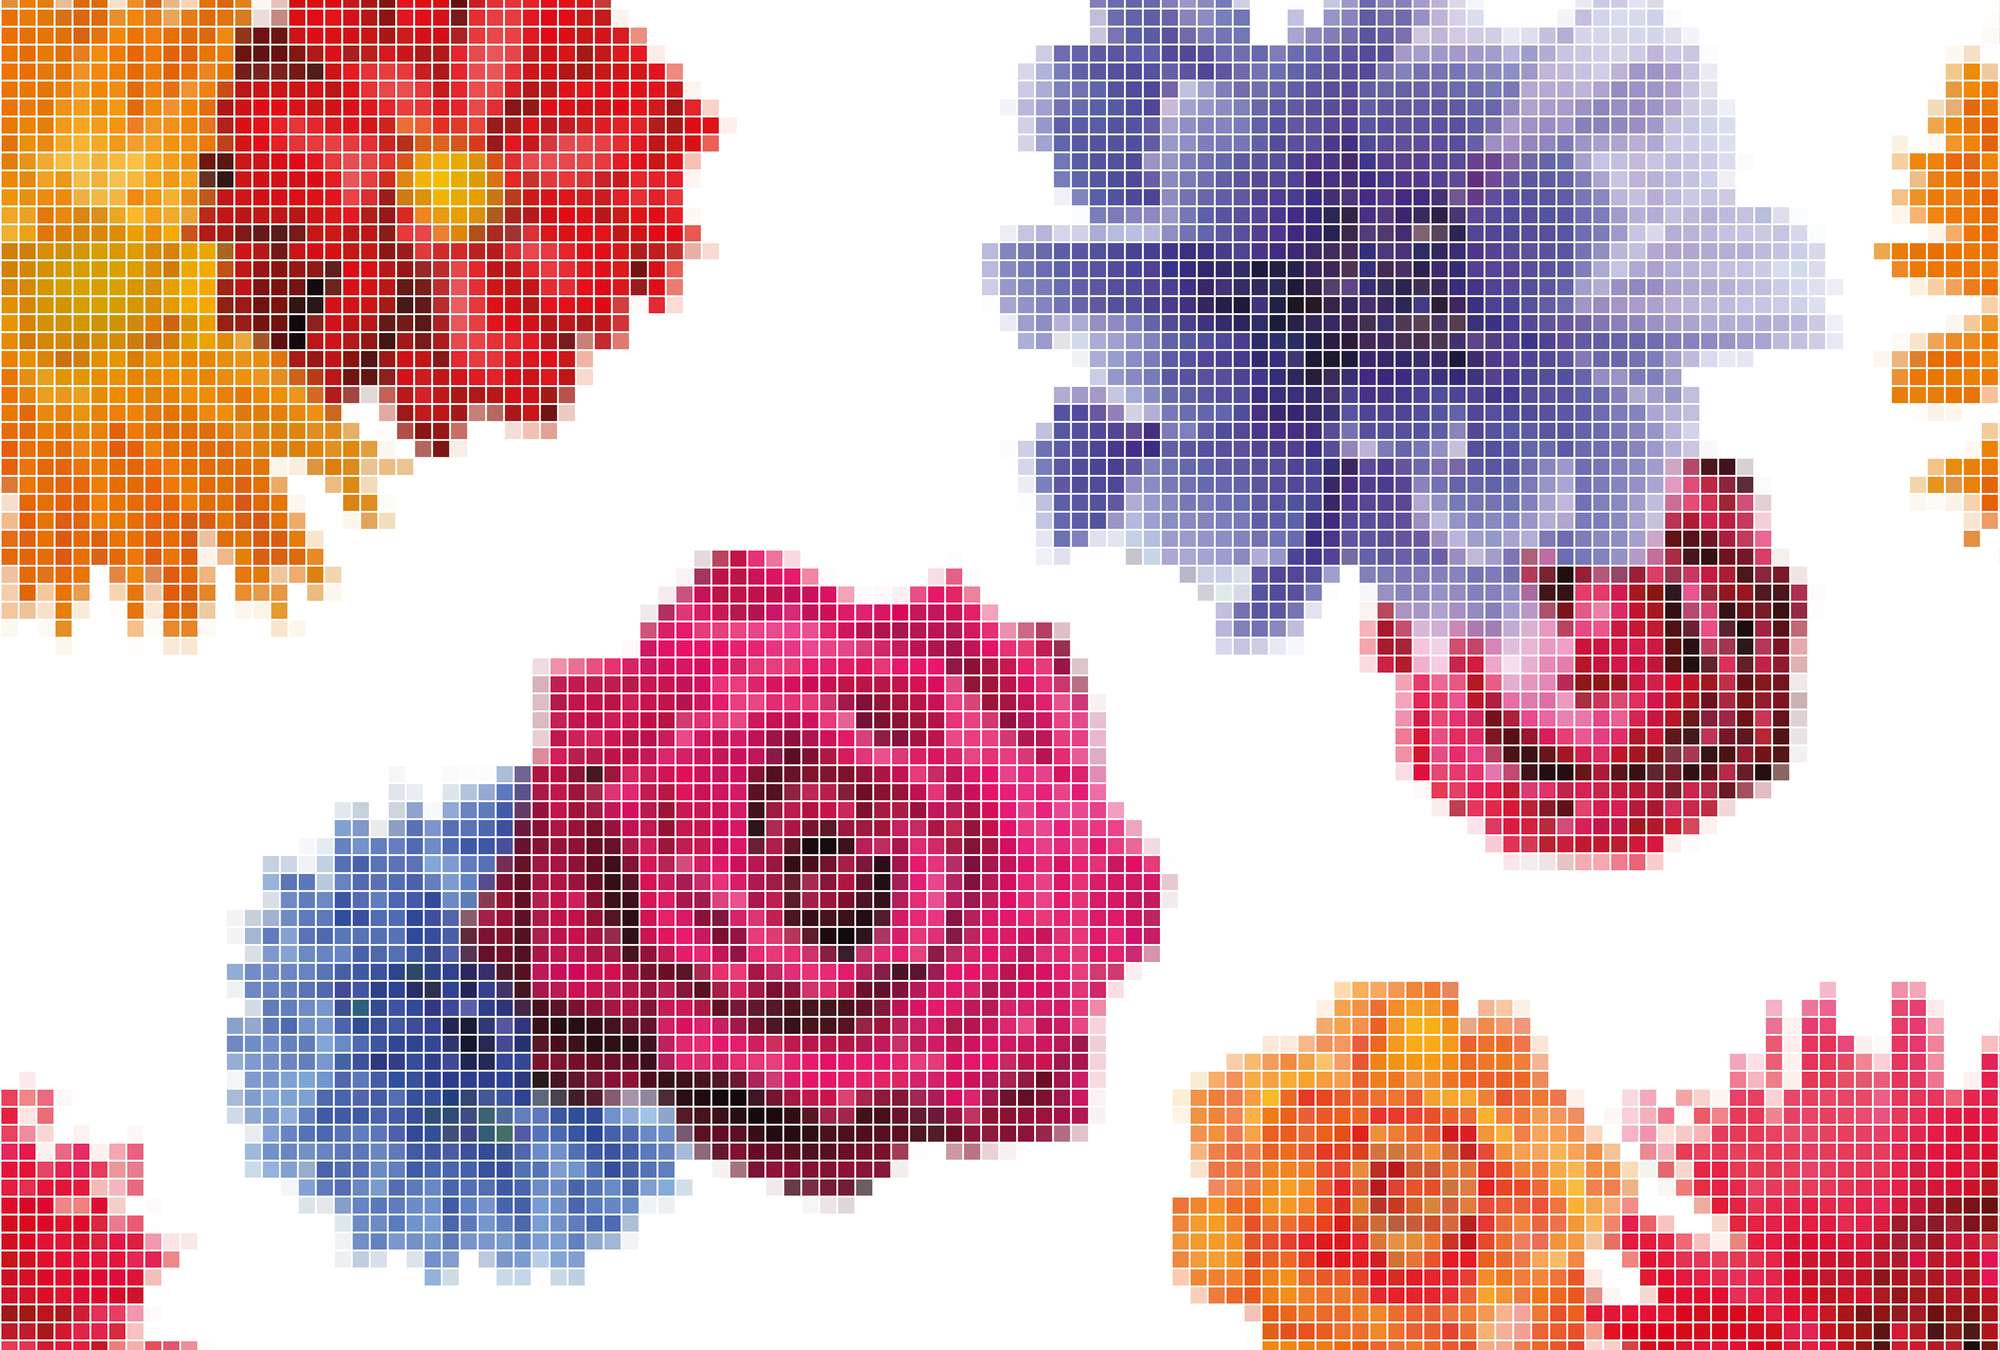             Papel Pintado Pixel Artwork - Rosas en el Diseño Gráfico
        